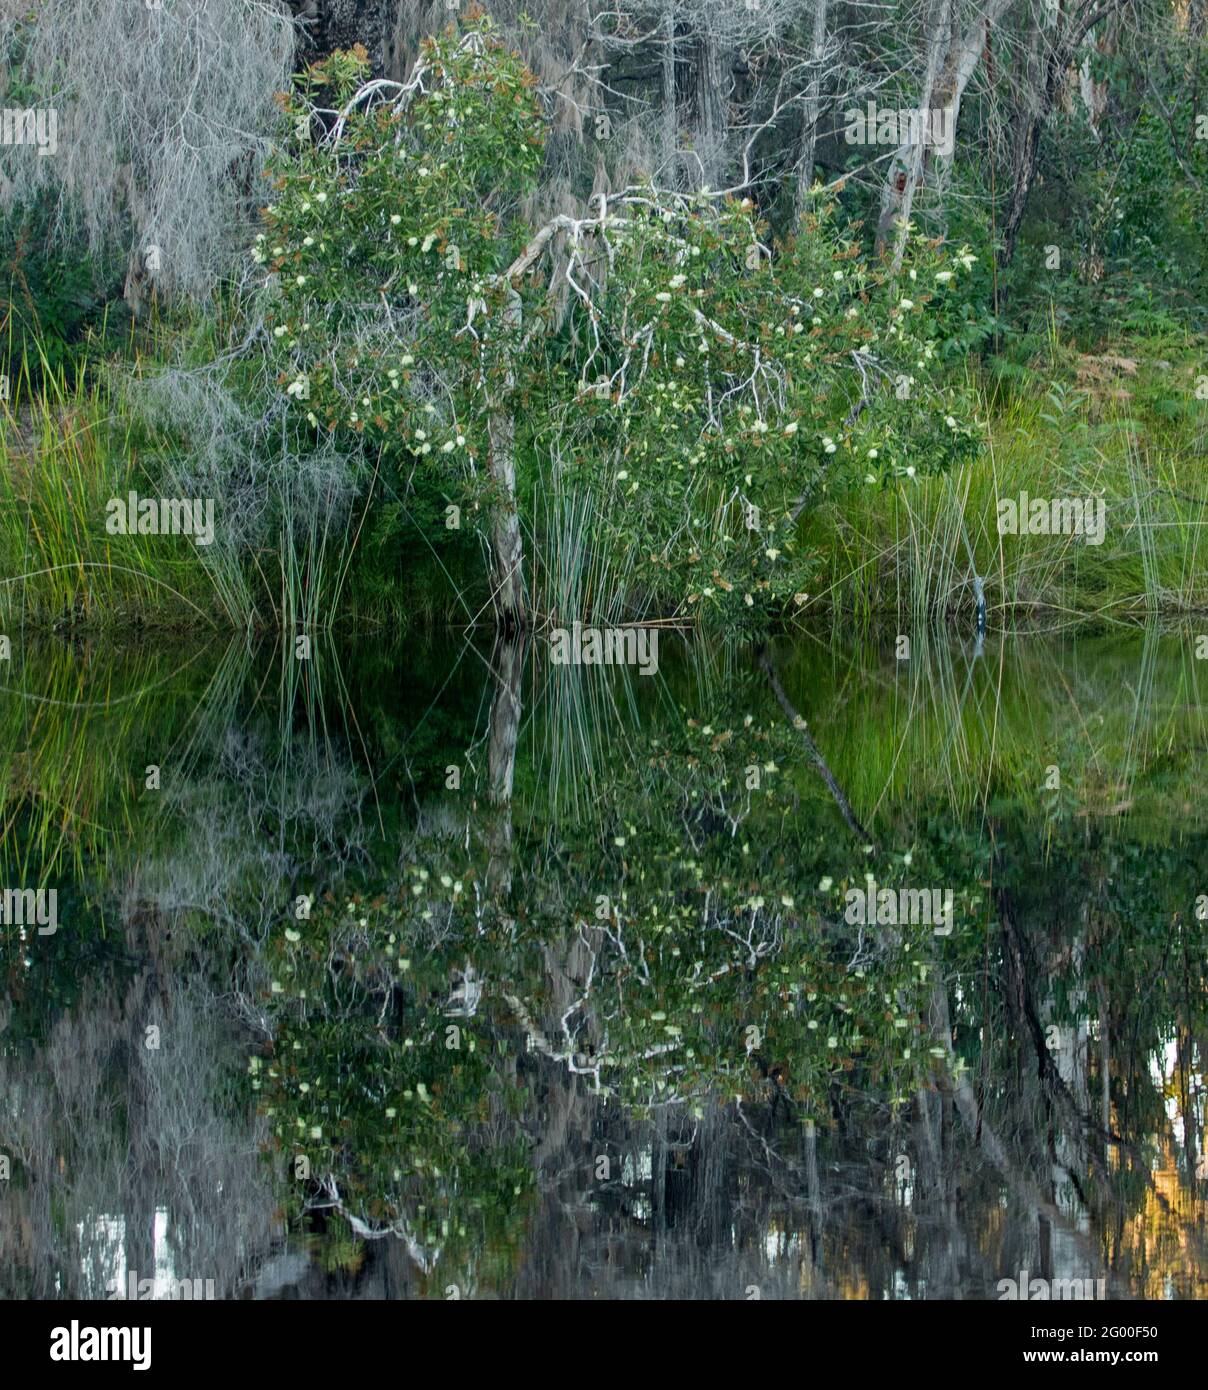 Blühende melaleuca / Paperbark Baum und andere einheimische Vegetation spiegelt sich in der Spiegelfläche des dunklen Wassers des Noosa River, Sunshine Coast, Australien Stockfoto